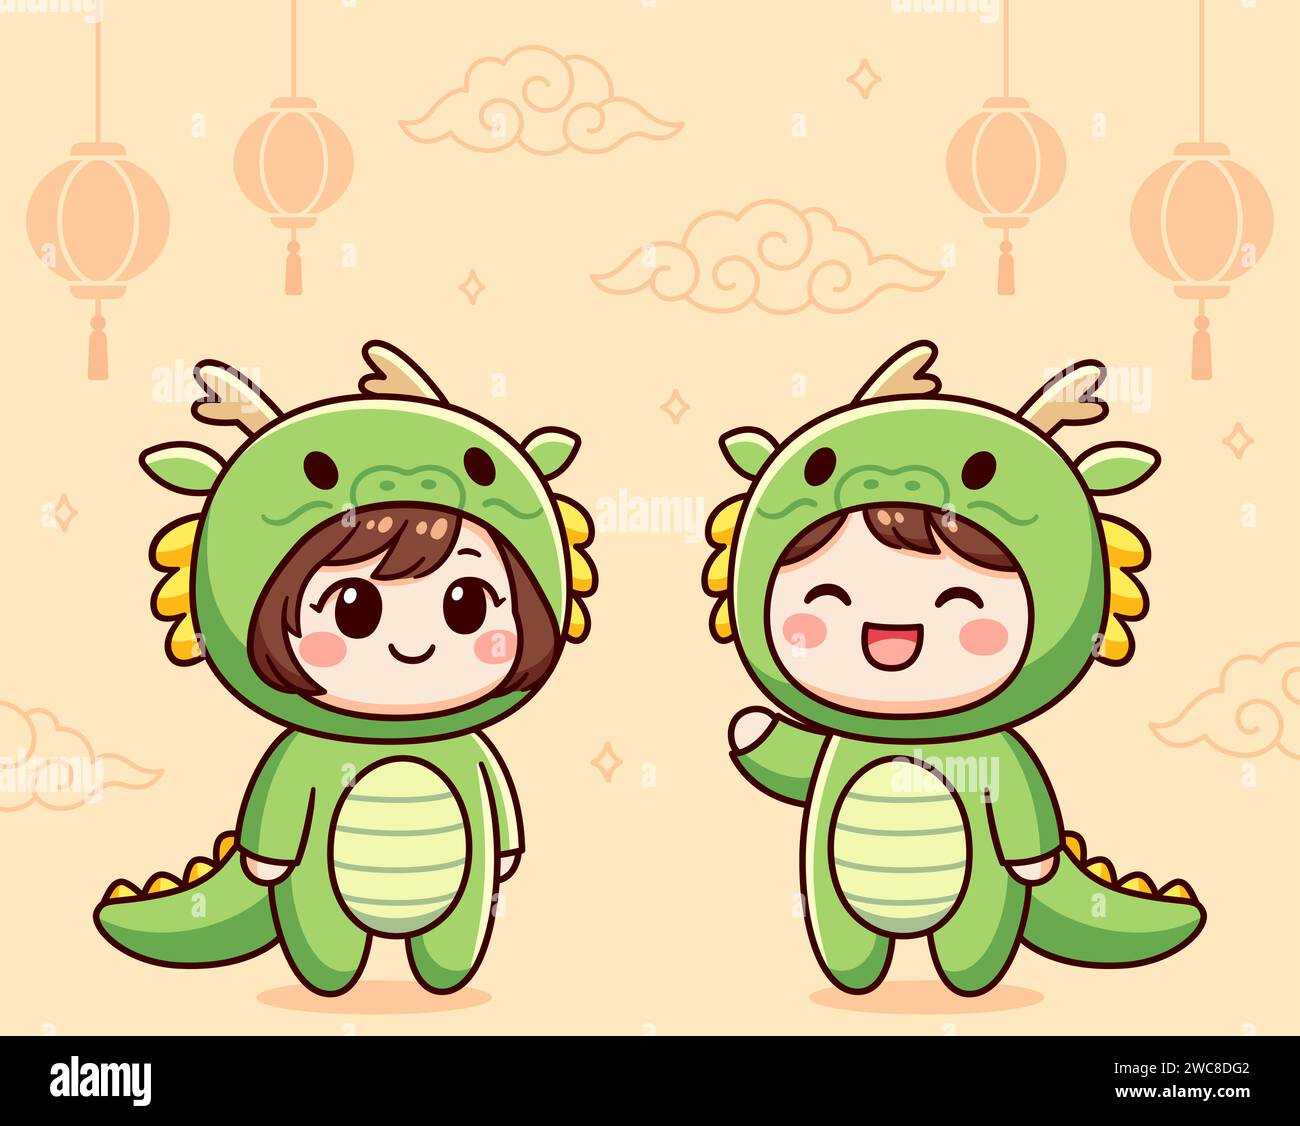 Bambini Kawaii in costumi da drago verde. Biglietto d'auguri per capodanno cinese per bambini e ragazze. Carino disegno di clip art vettoriale dei cartoni animati. Illustrazione Vettoriale